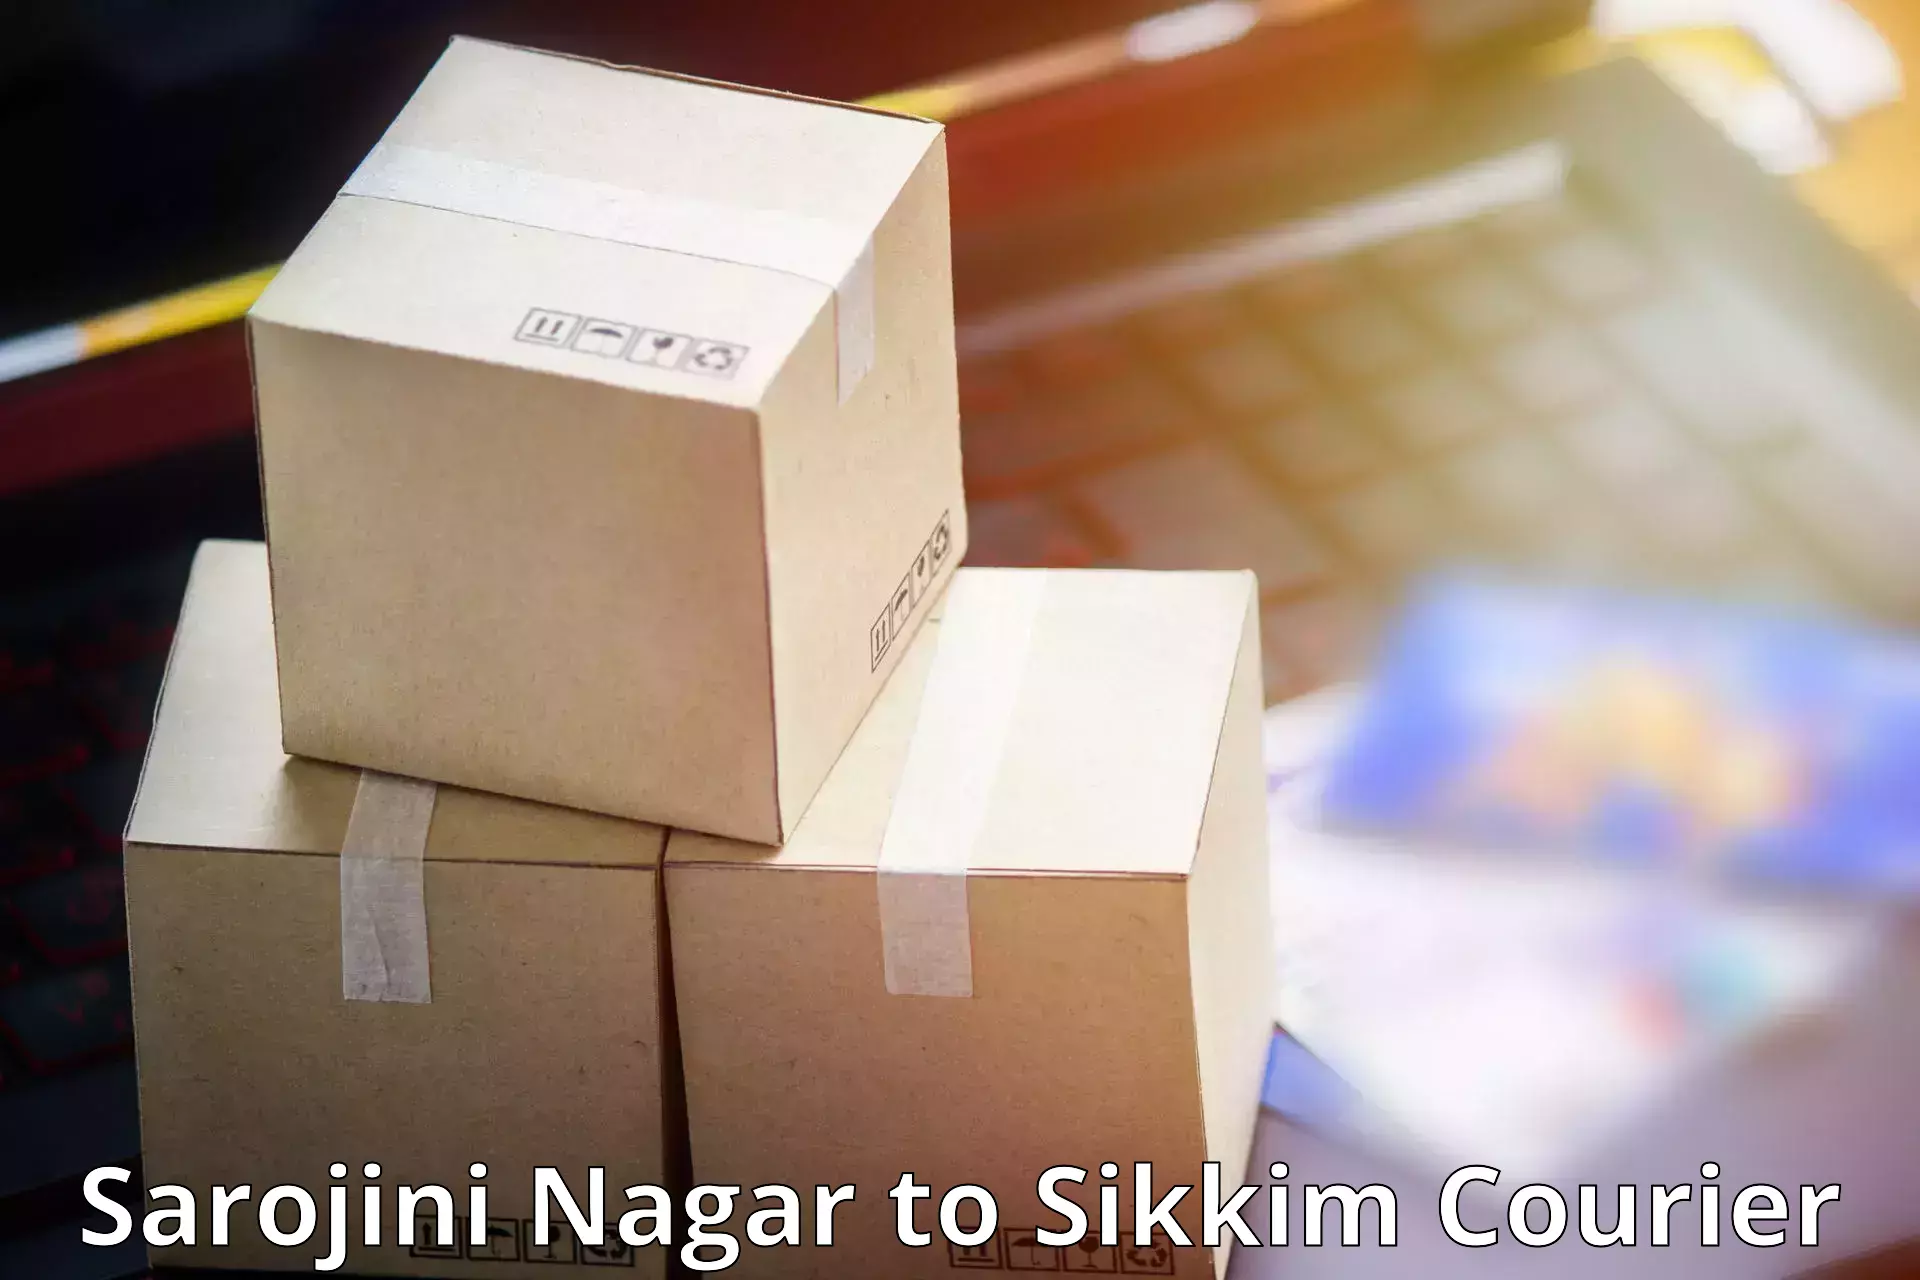 Global shipping networks Sarojini Nagar to Gangtok